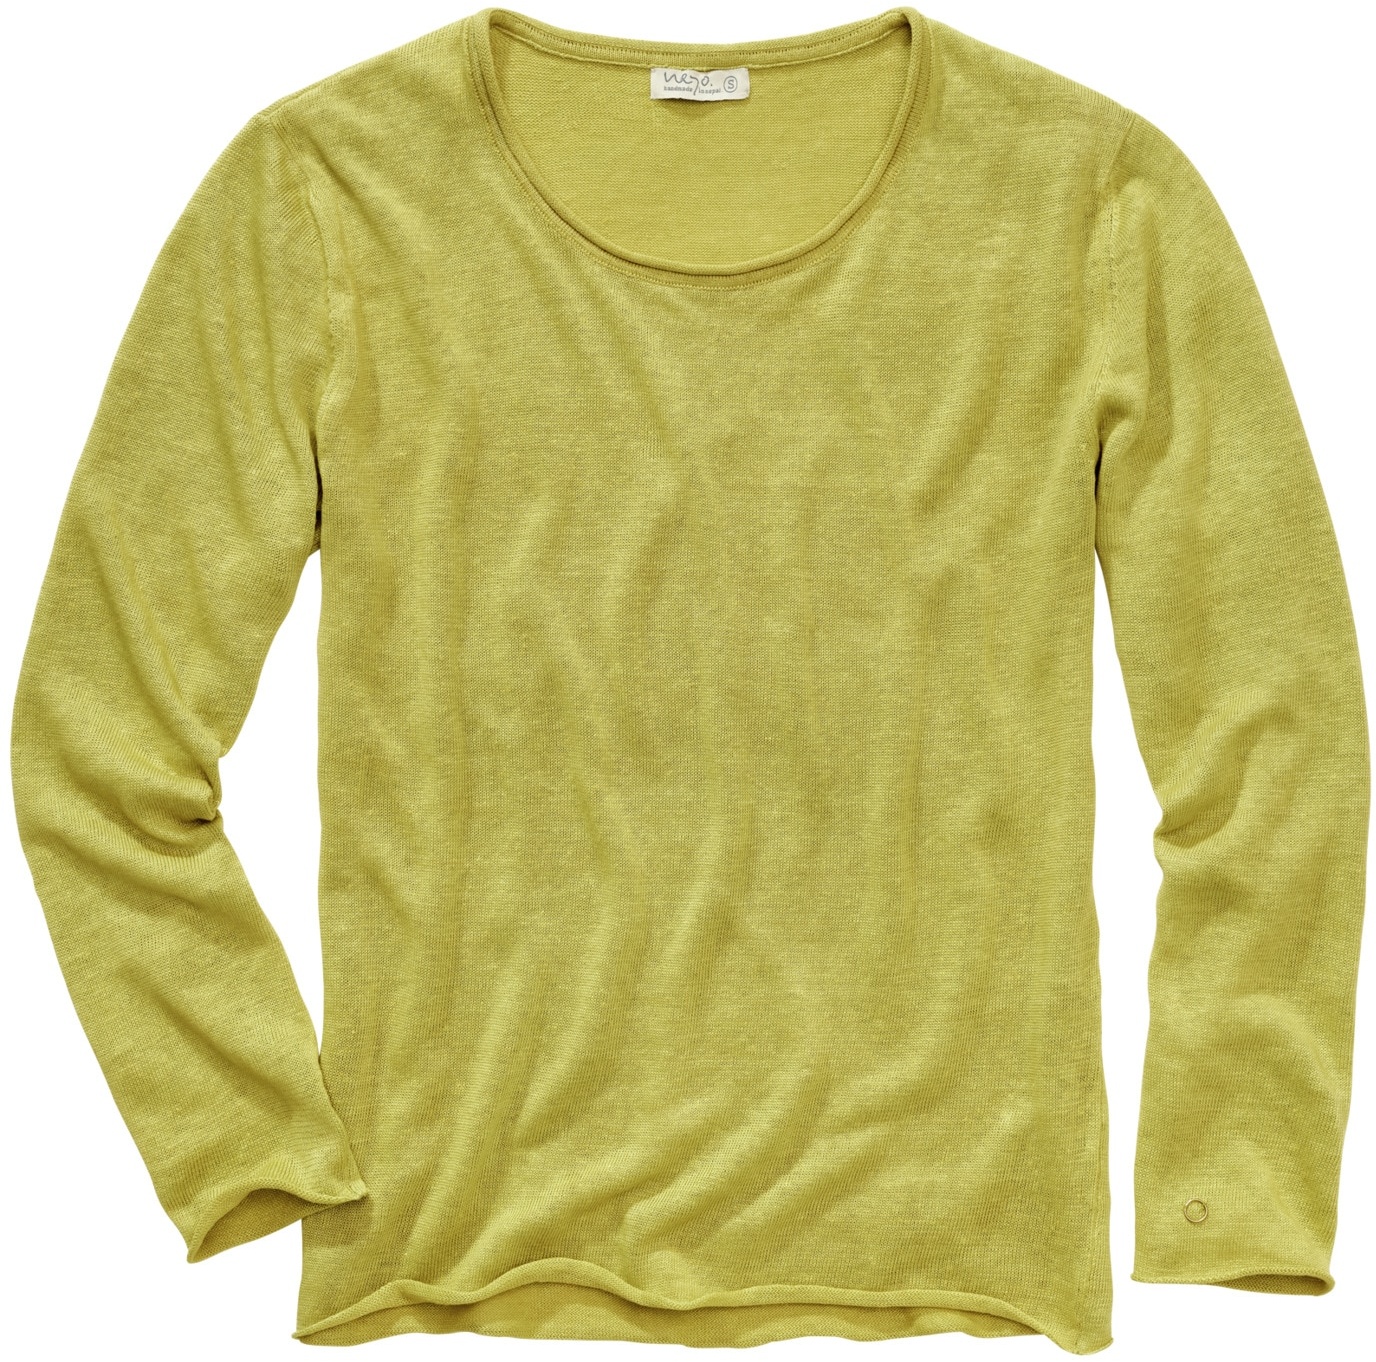 Neyo Herren Sweater Regular Fit Gelb einfarbig - XL